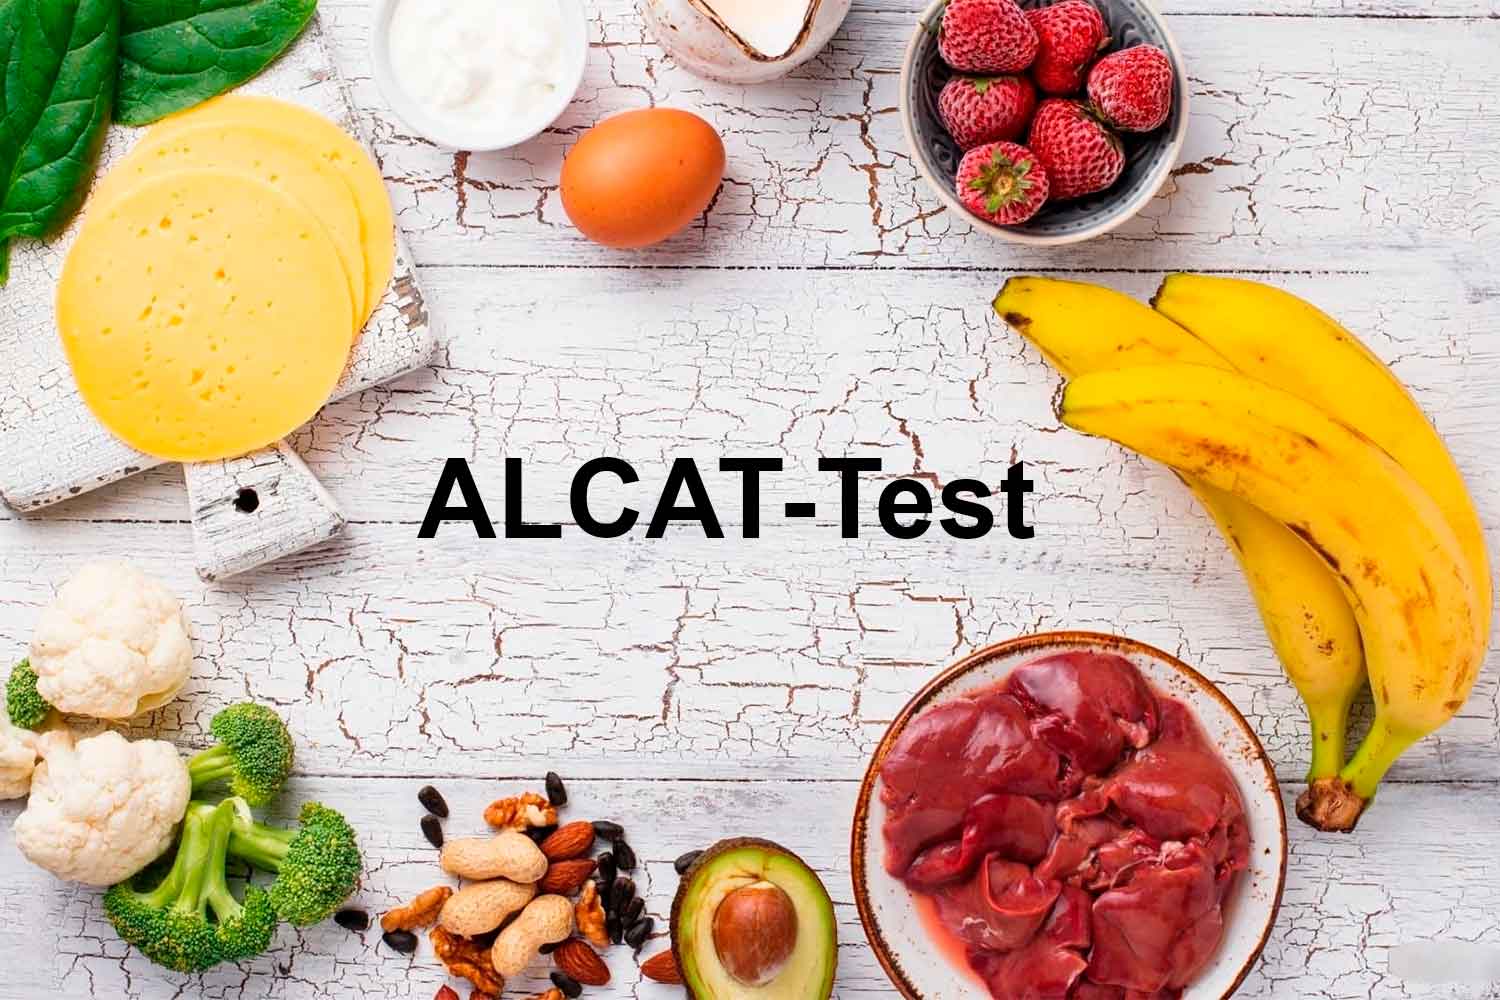 ALCAT-Test